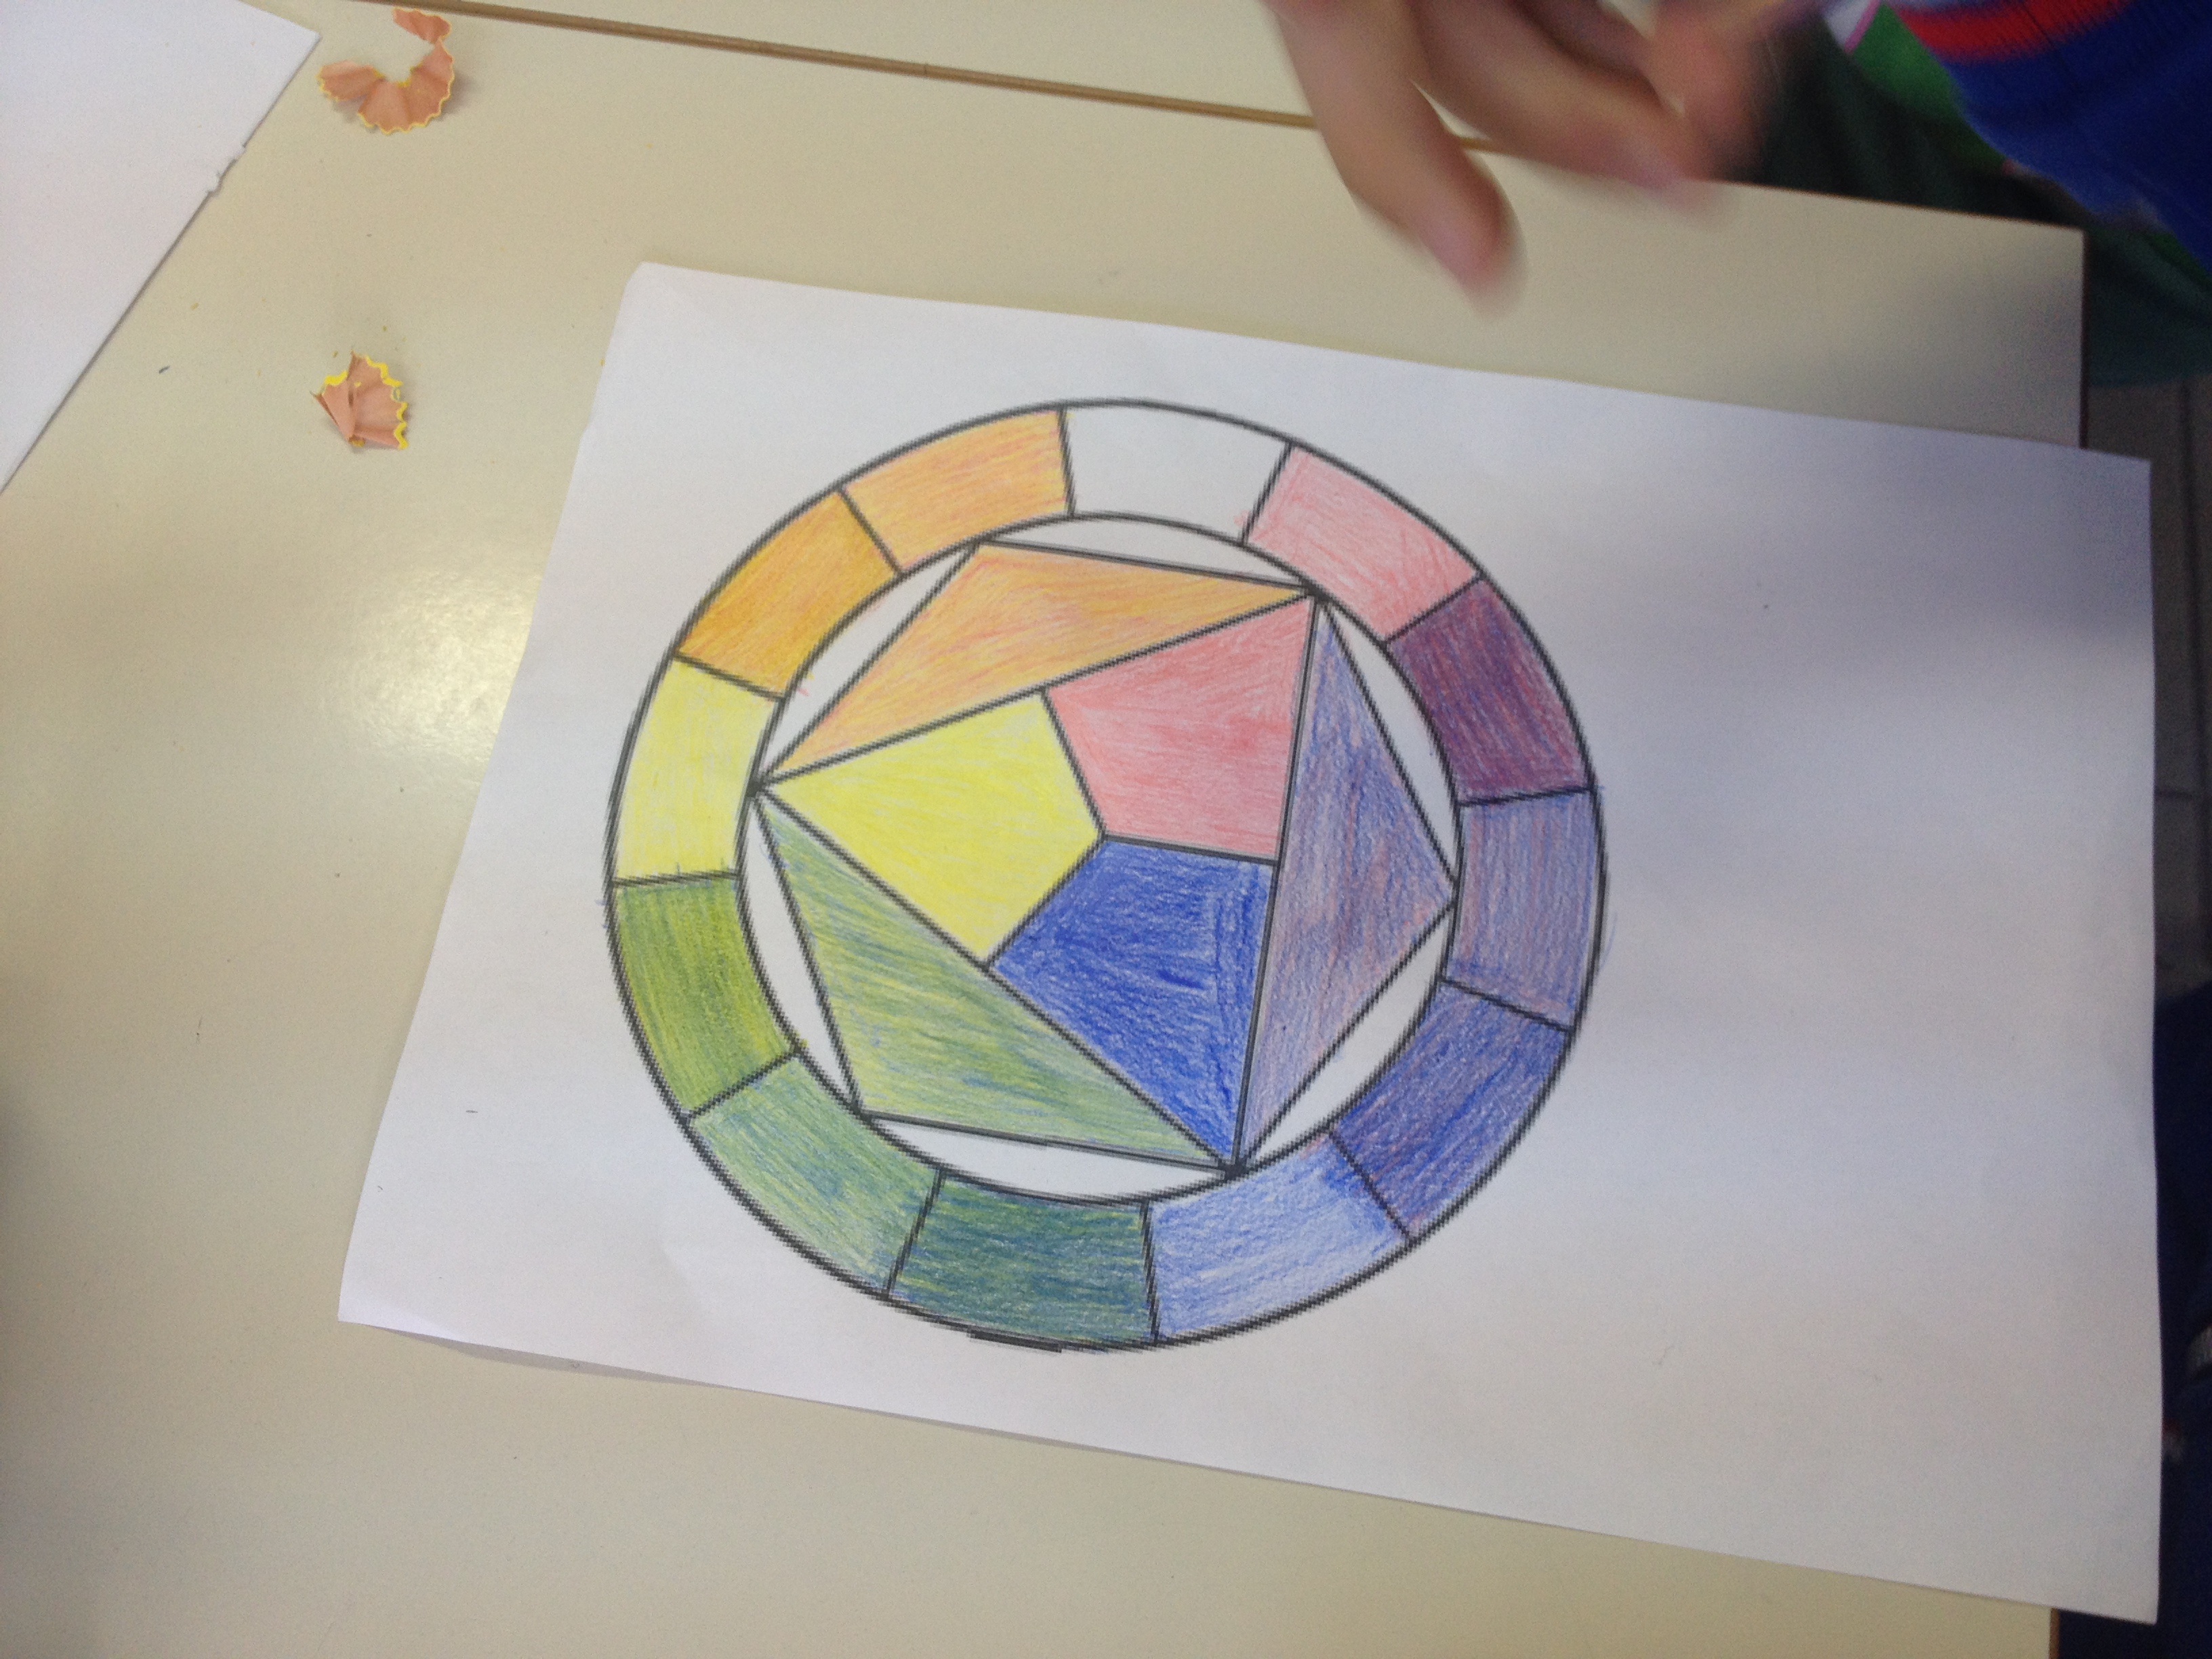 Teoria dei colori classe 5a: il cerchi di Itten e riflessione sui colori -  MaestraMarta